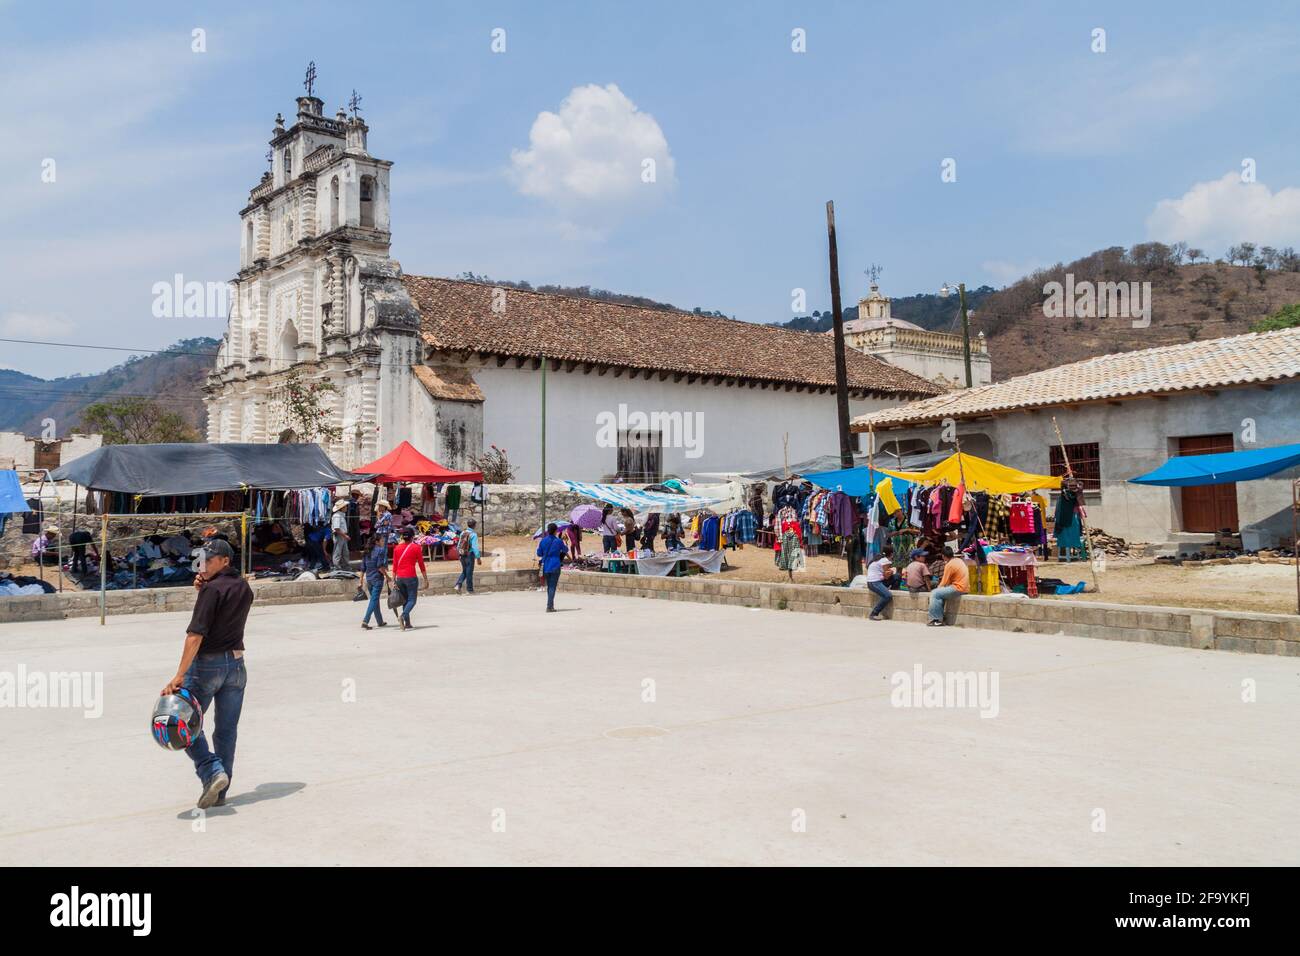 SAN MANUEL DE COLOHETE, HONDURAS - 15. APRIL 2016: Einheimische Ureinwohner auf einem Markt. Zweimal im Monat gibt es in diesem Dorf einen großen Markt. Stockfoto